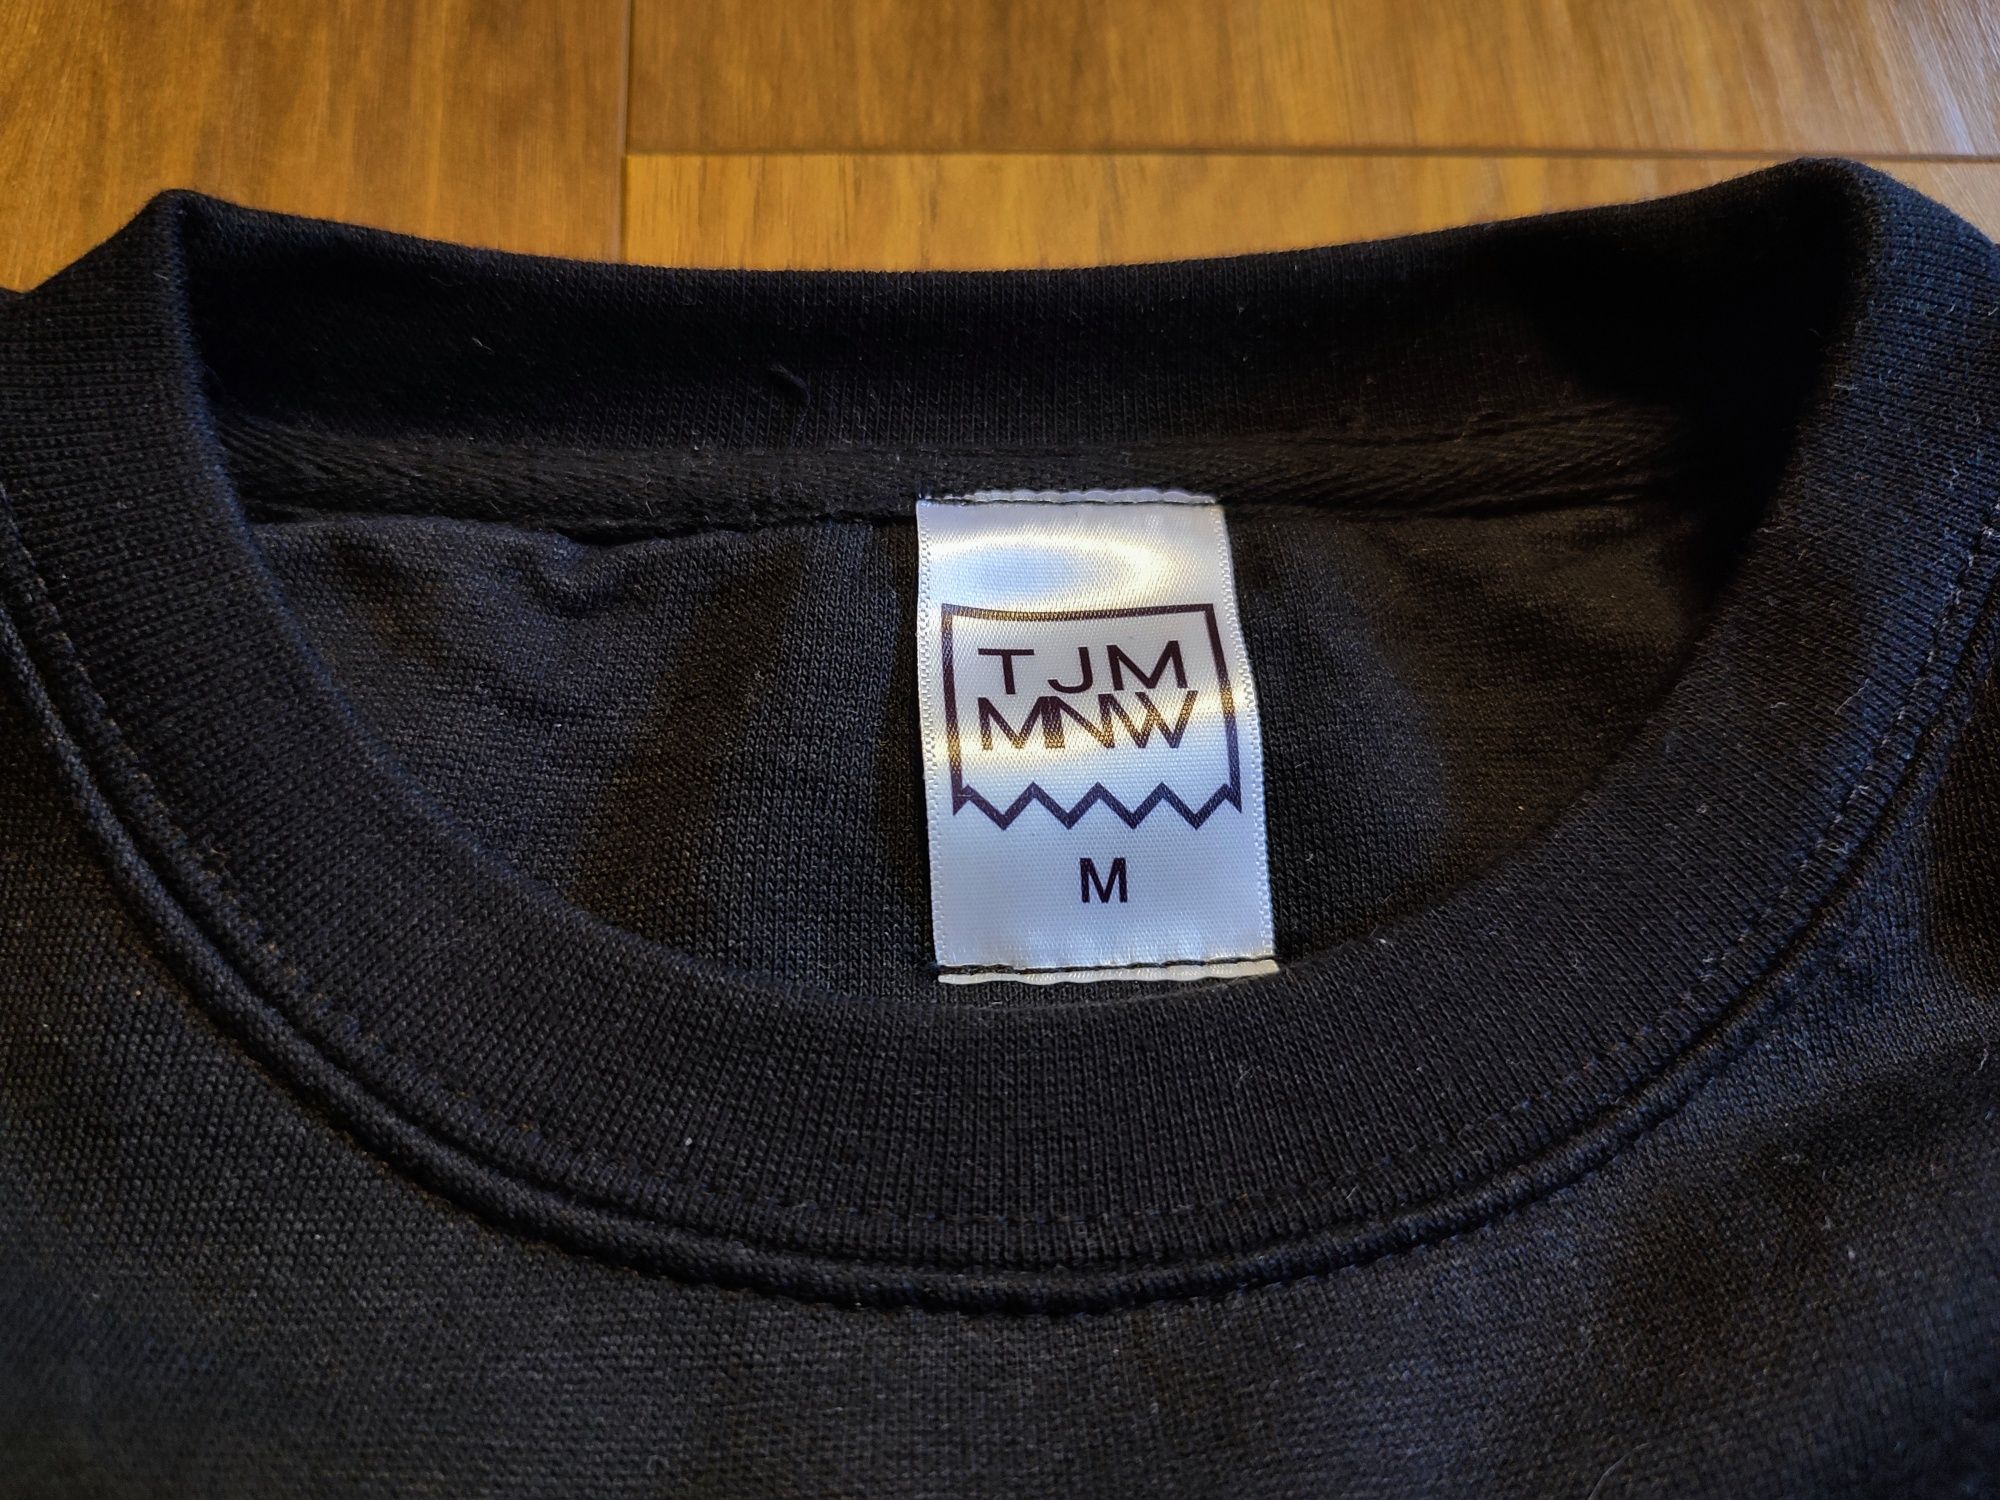 Nowa bluza TJMMNW, rozmiar M, czarna, złoty napis